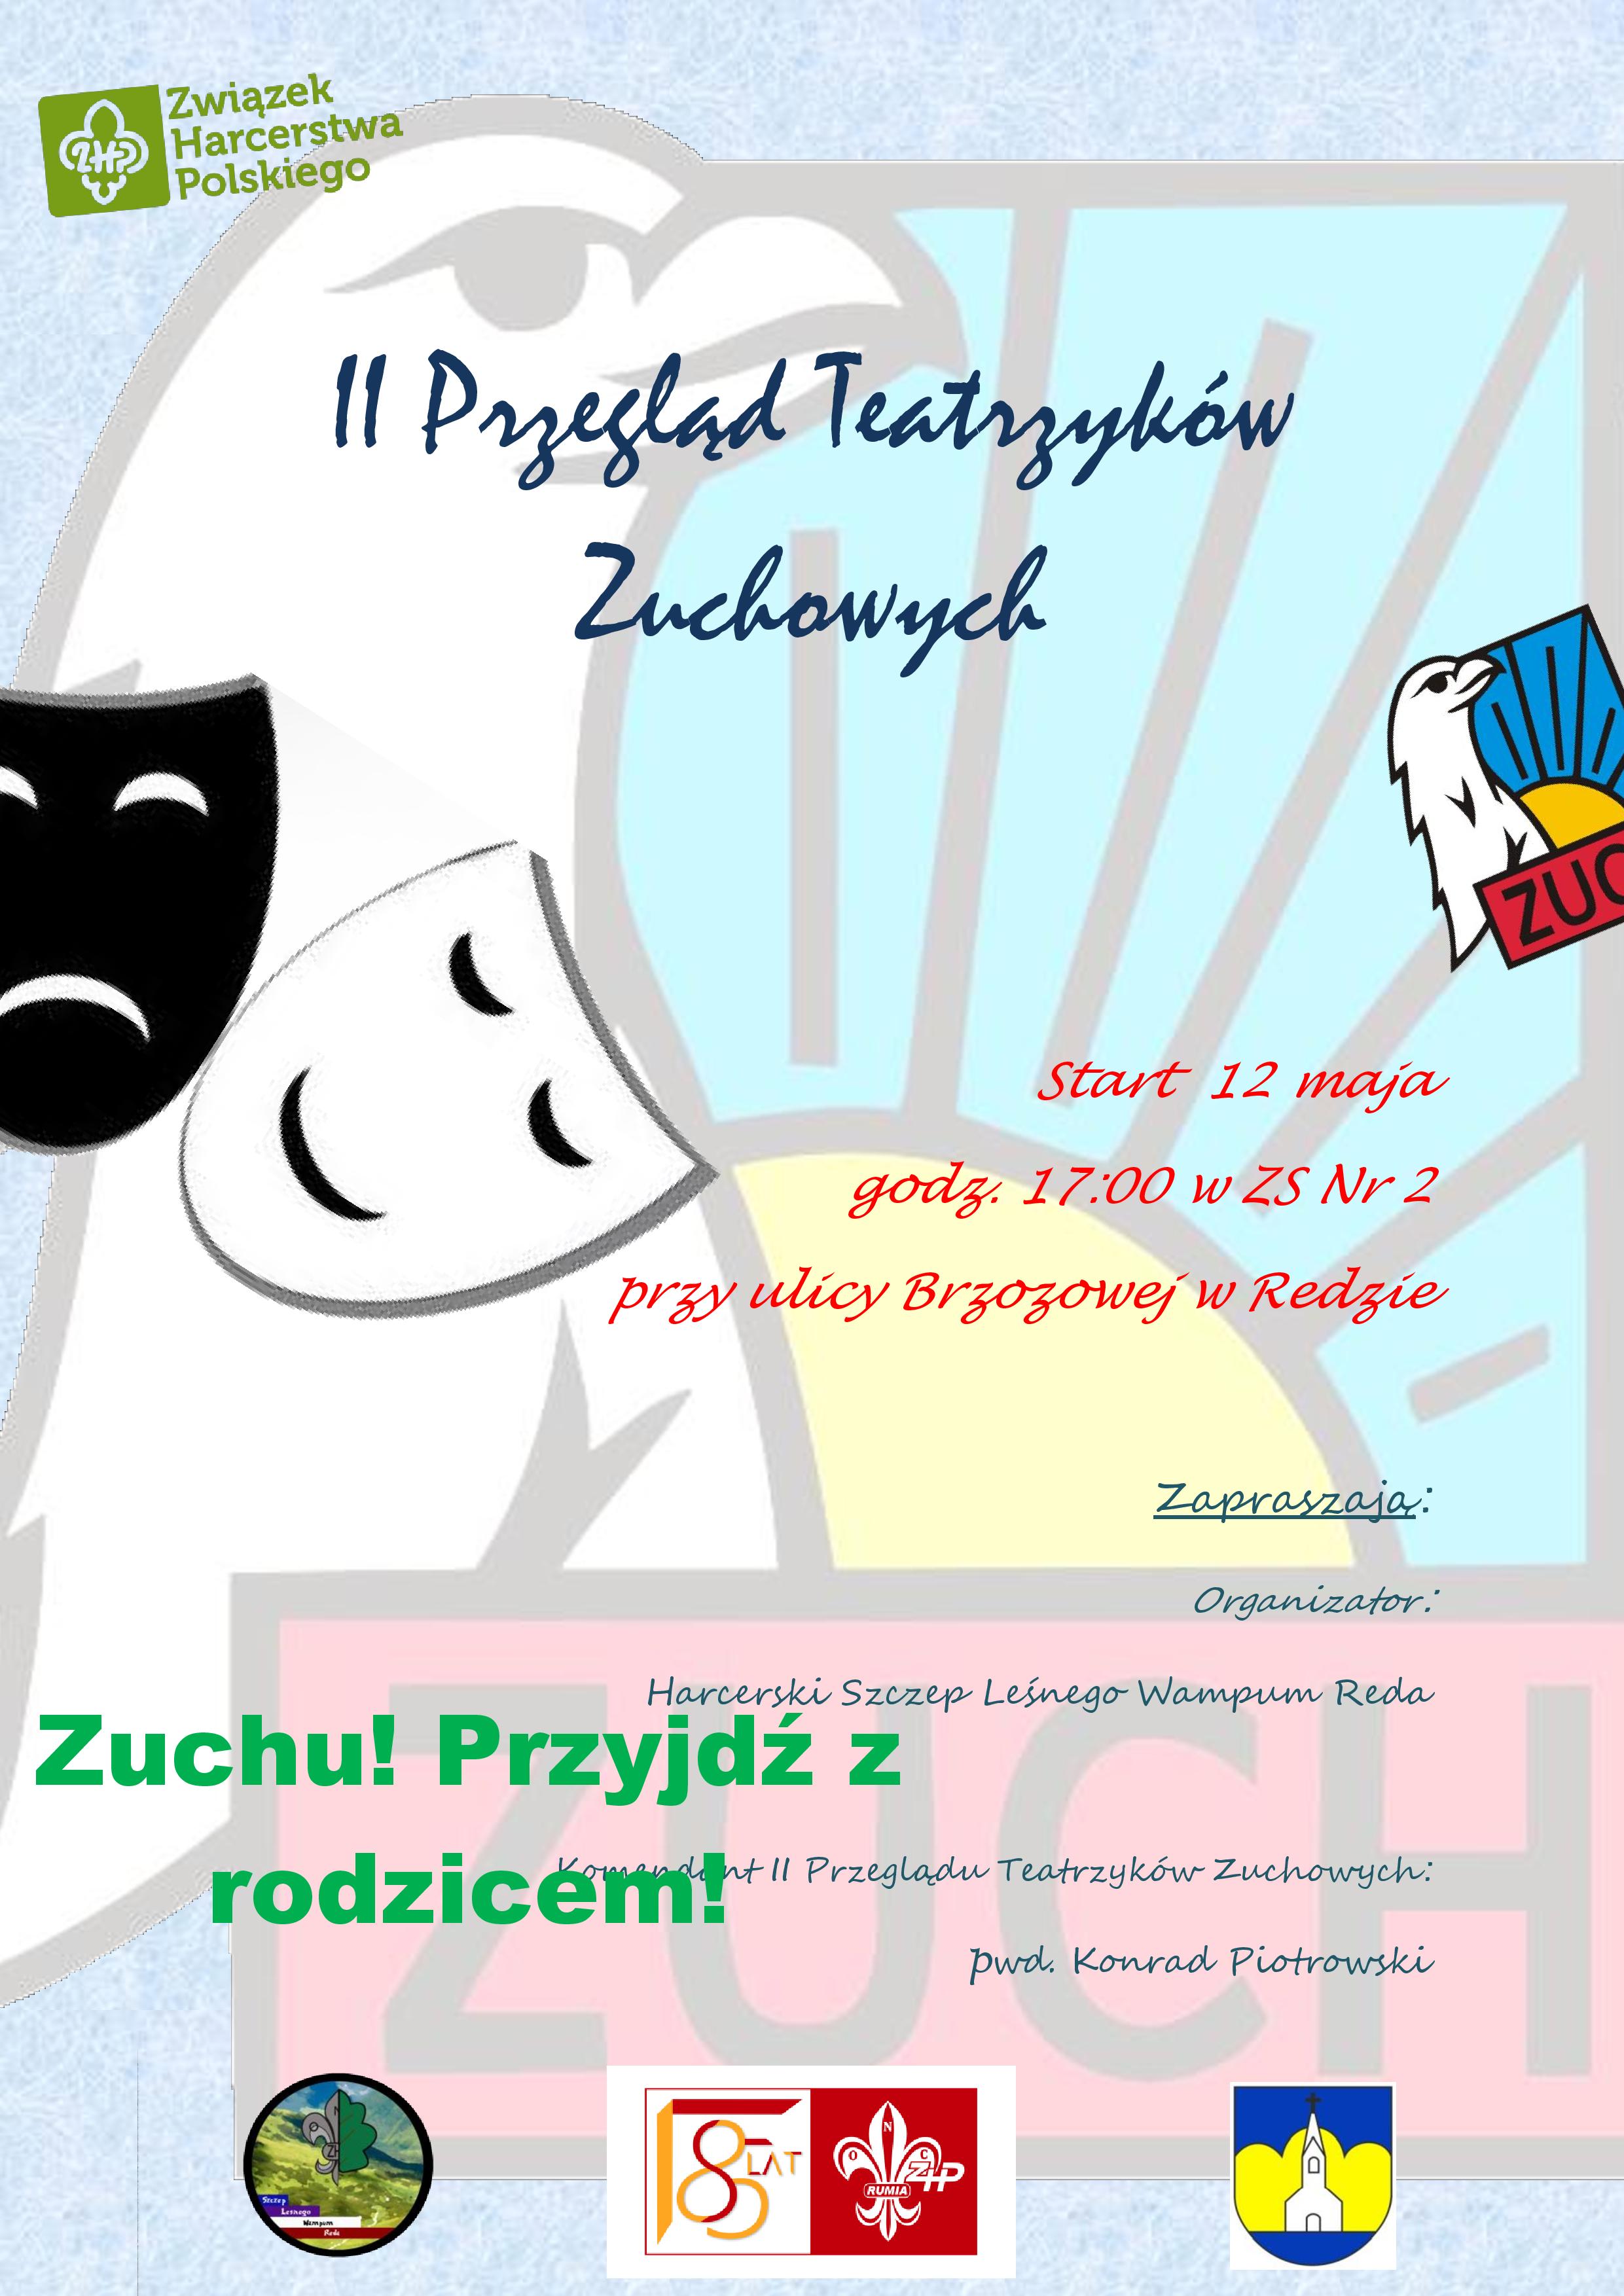 12 maja zapraszamy na II Przegląd Teatrzyków Zuchowych